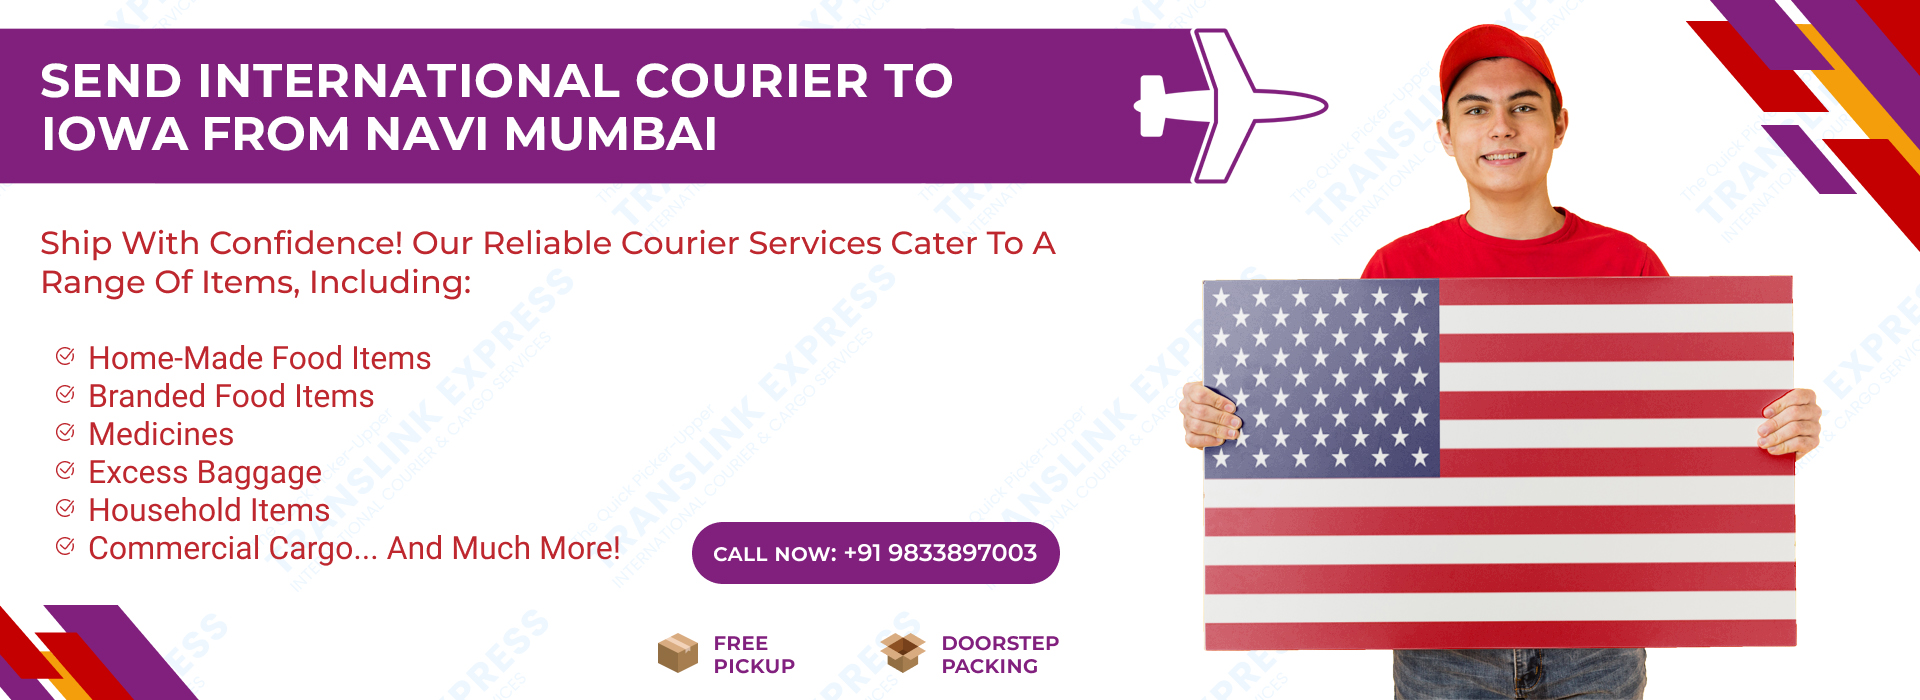 Courier to Iowa From Navi Mumbai